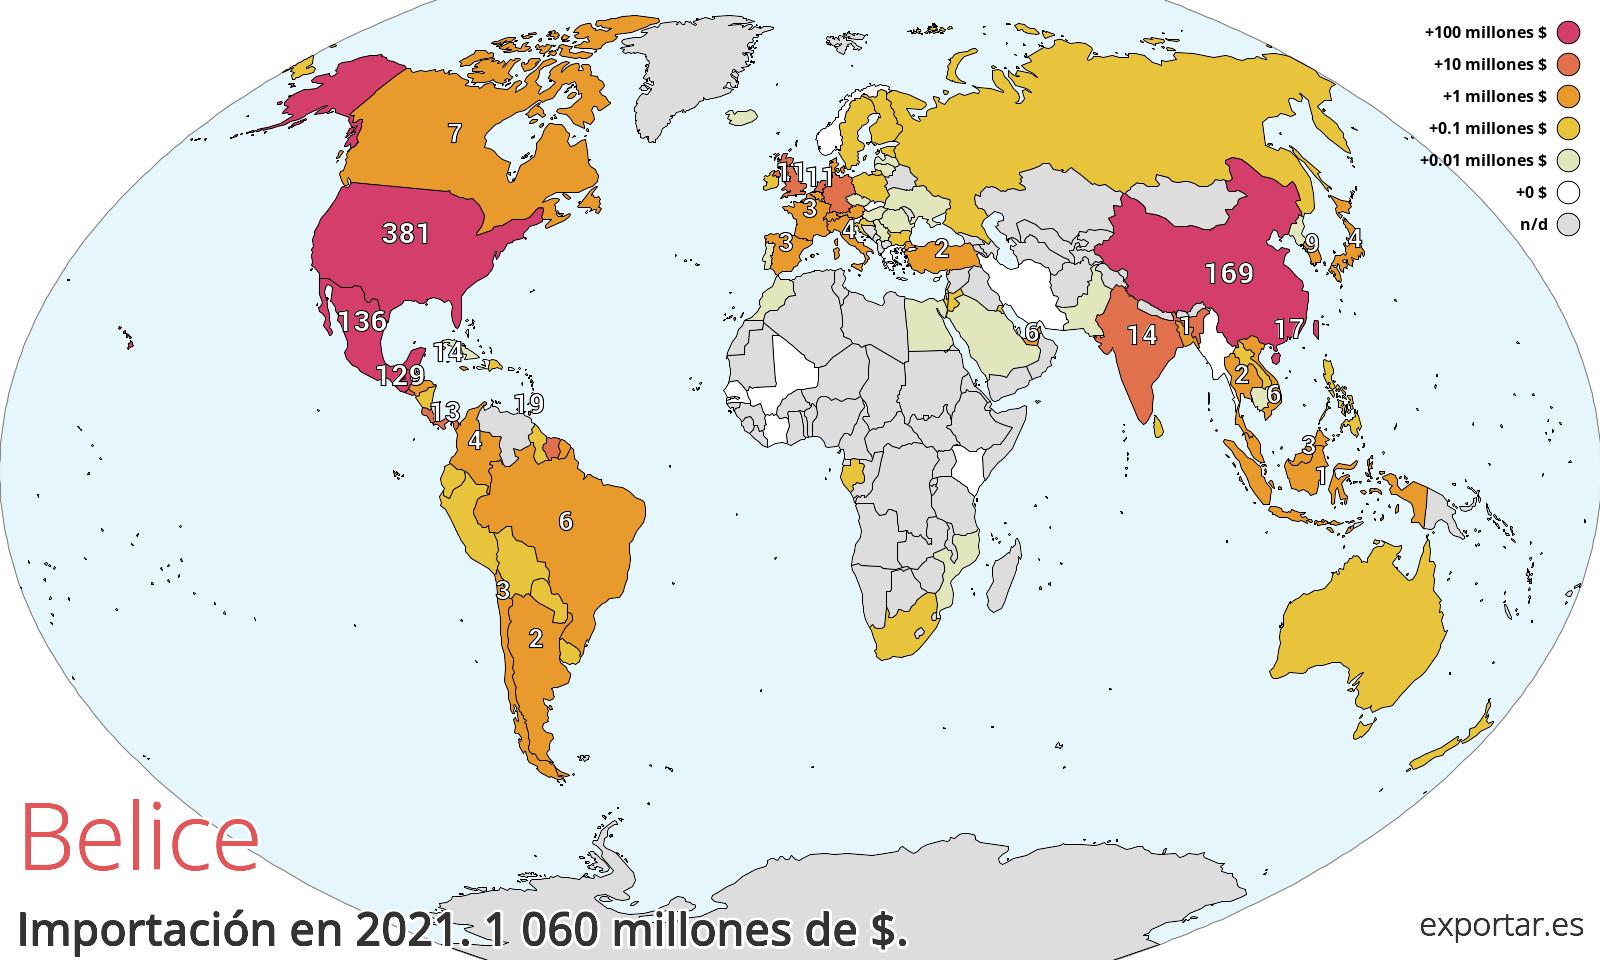 Mapa de importación de Belice en 2021.